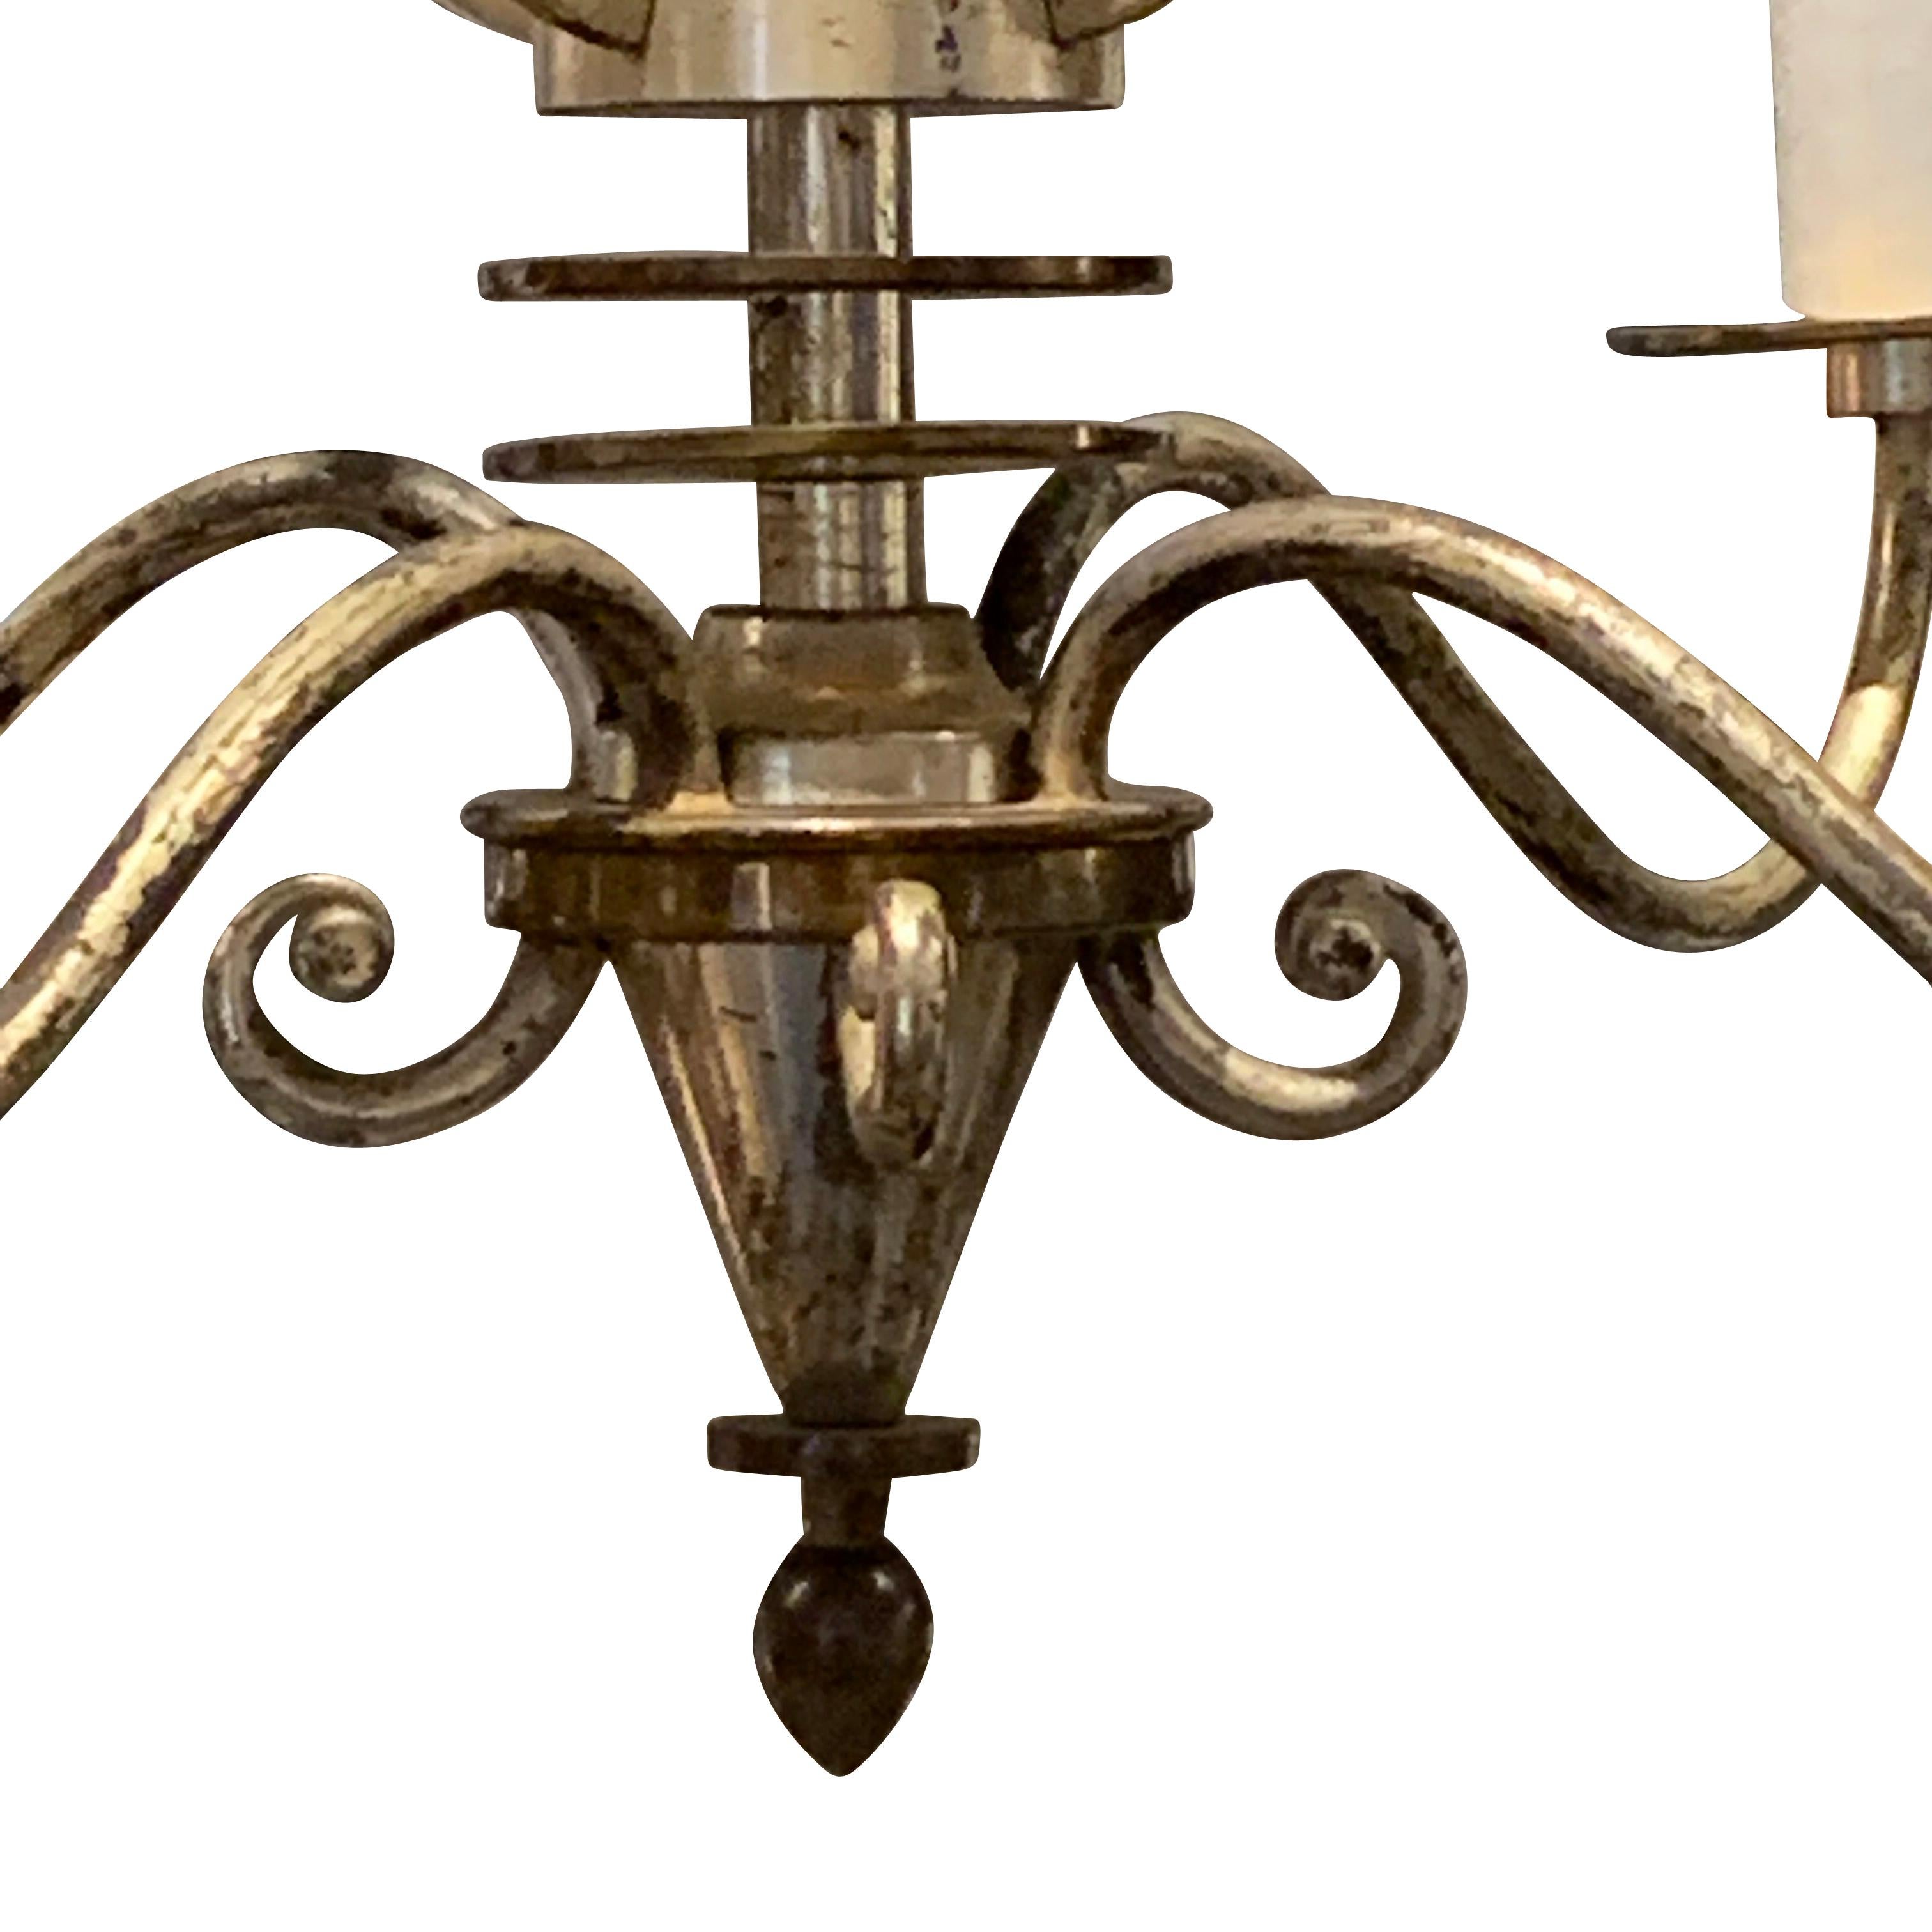 vierarmiger französischer Kronleuchter aus Silber und Bronze aus den 1940er Jahren.
Mittelsäule mit dekorativem Harfendesign.
Neu verkabelt
Kandelaber-Glühbirnen
Höhe der Halterung nur 19